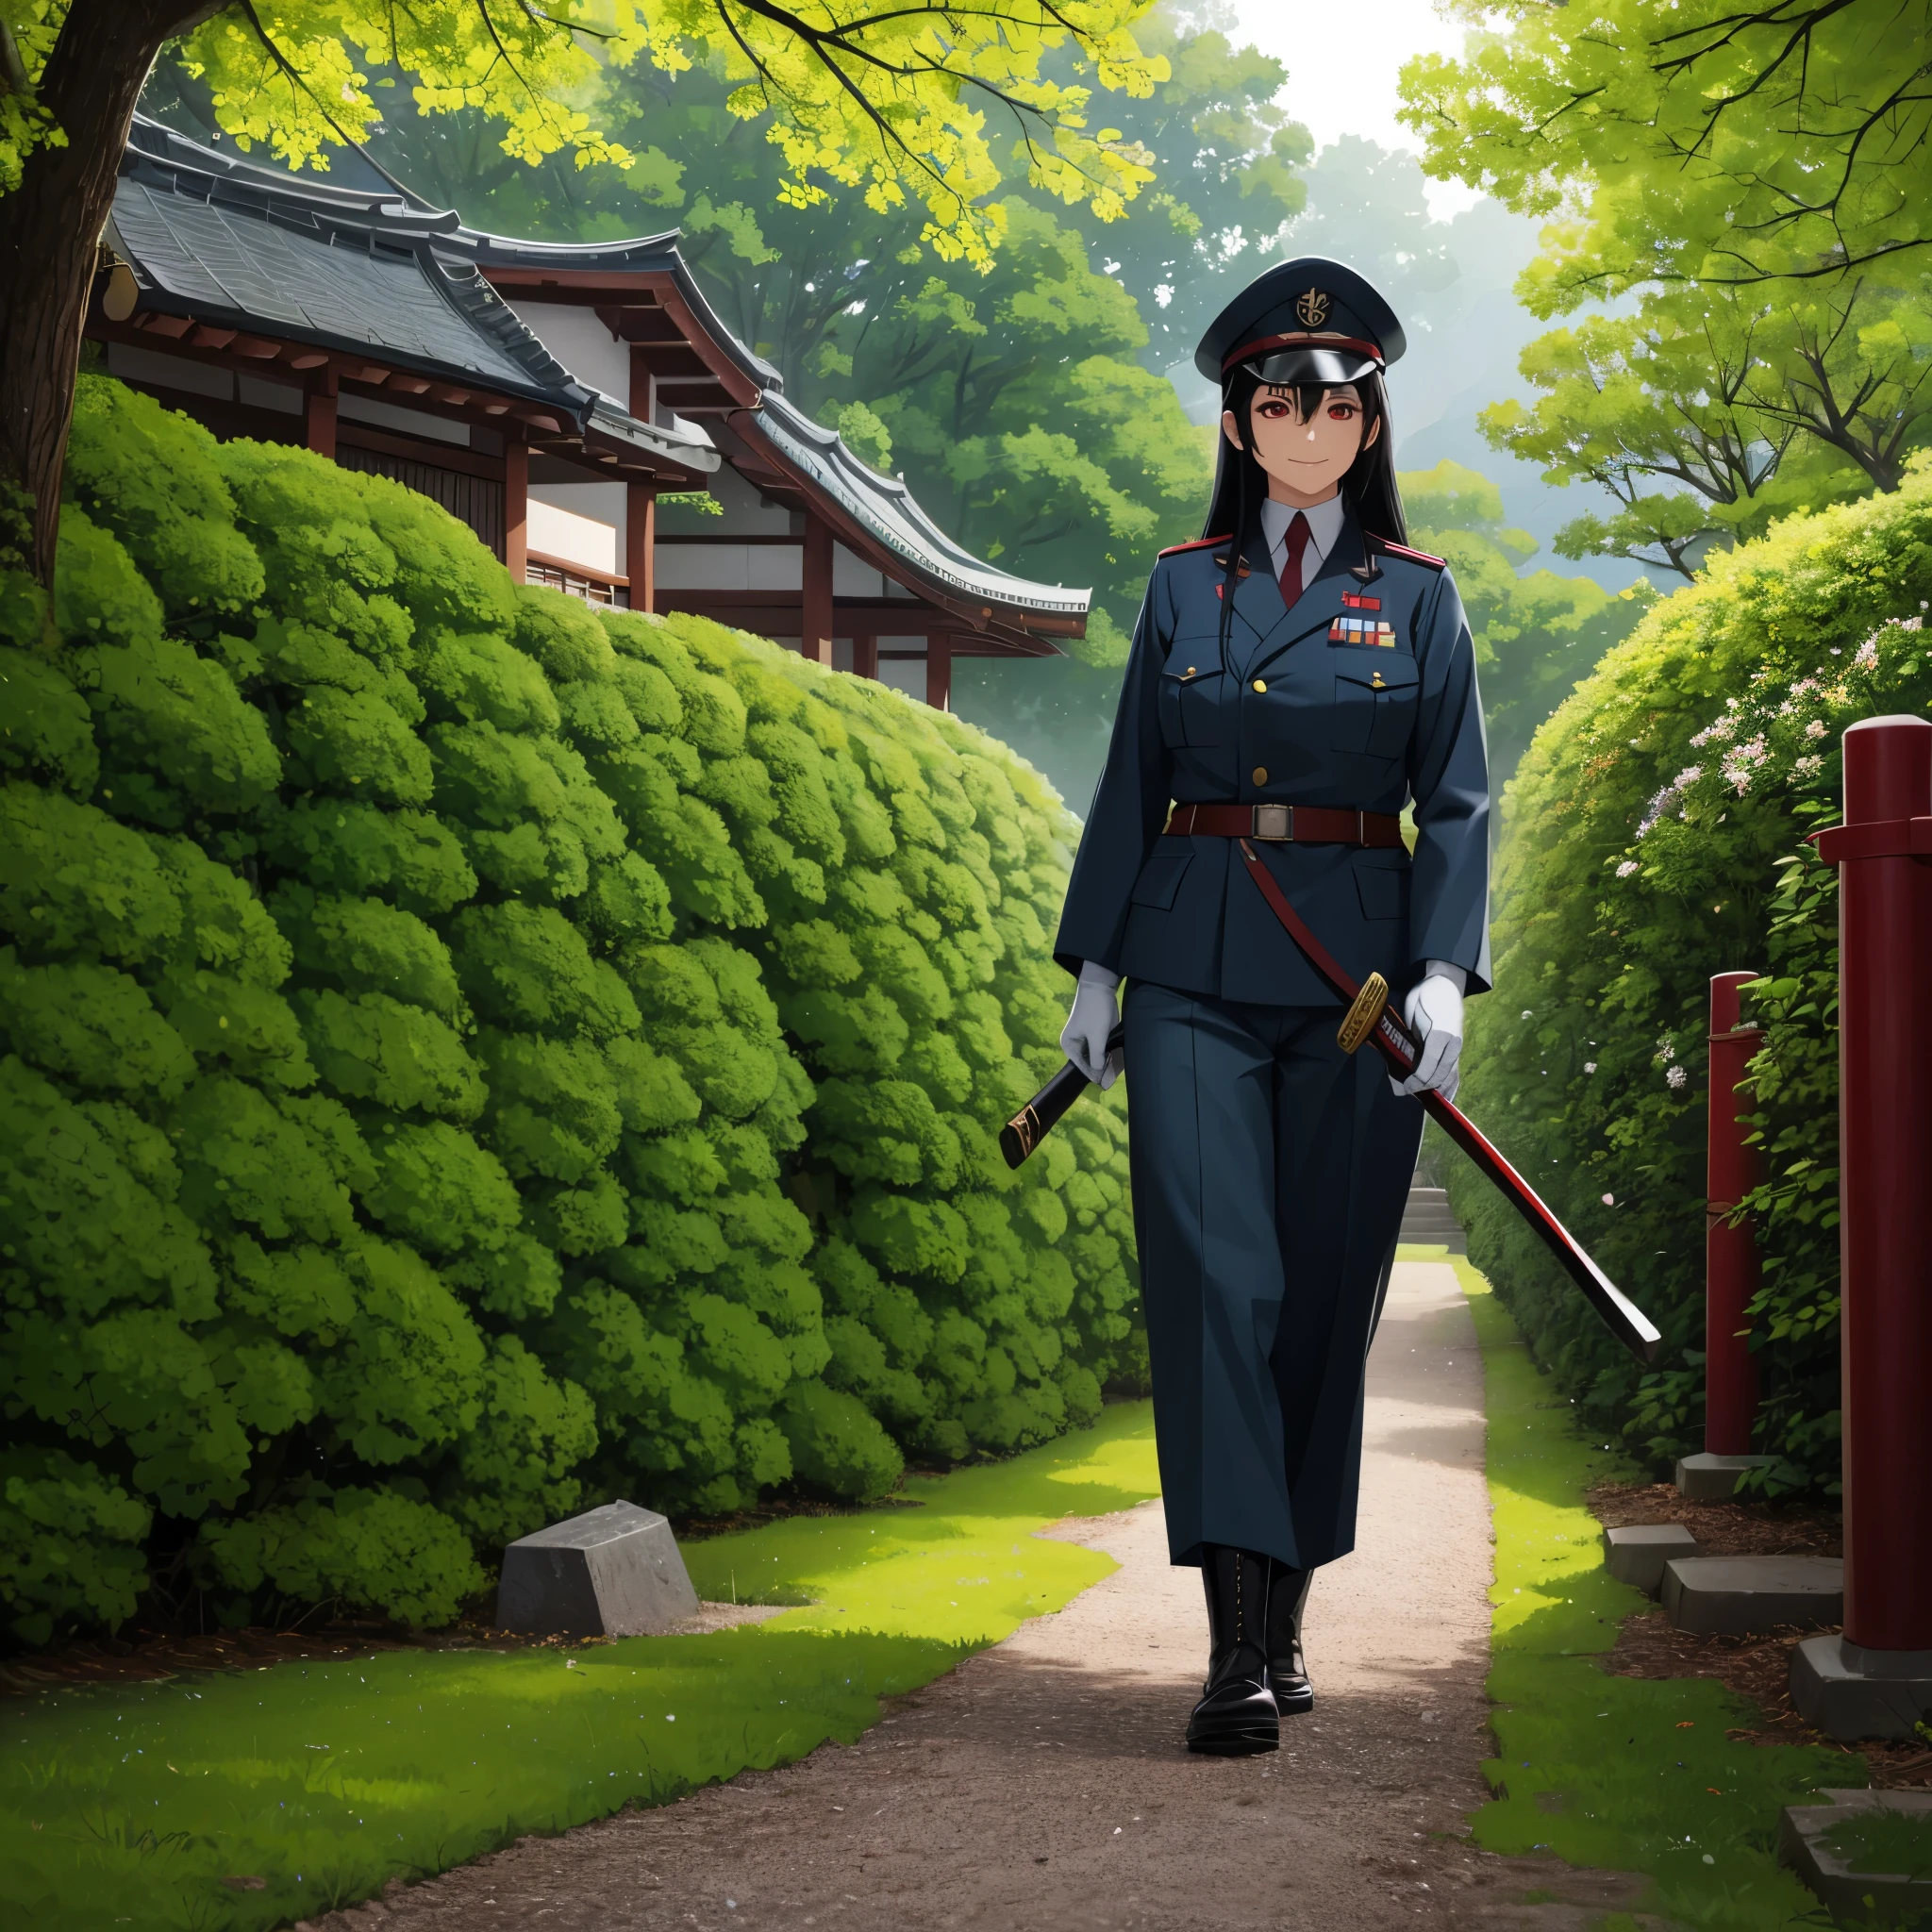 第二次世界大戦の日本軍の軍服を着た女性, モスグリーンの日本軍の帽子, モスグリーンパンツ, 軍用ブーツ, 鞘に入れずに刀を持っている, 長い黒髪, 赤い目, 白い手袋, 笑顔, 全身, 軍事基地を背景に日本庭園を歩く,高解像度, 超解像度, 明確に定義された, 傑作, 8K HD. (ソロ女性)
